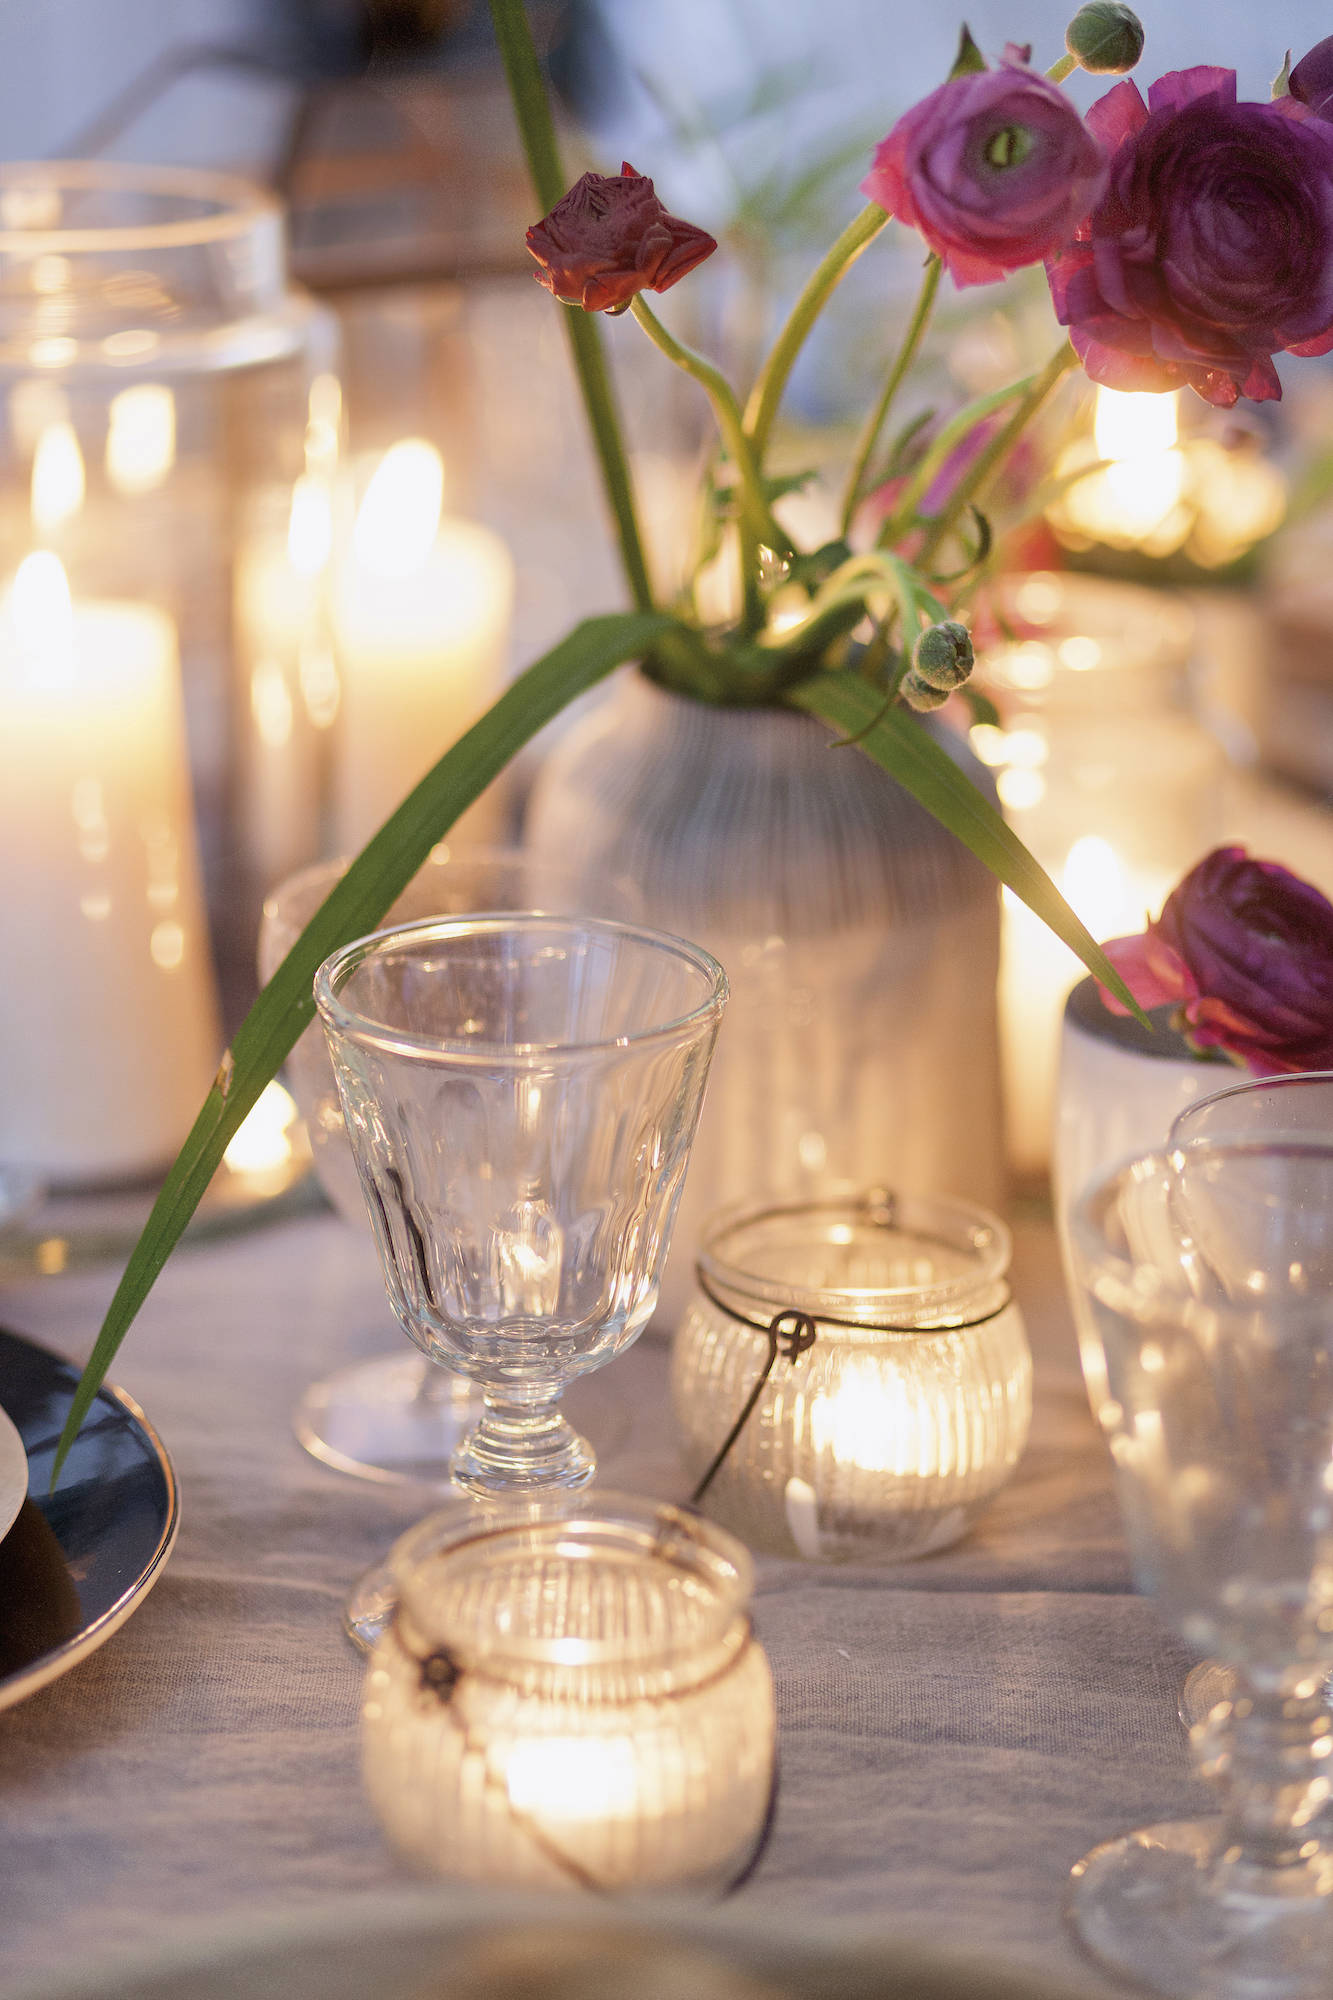 Mesa con velas encendidas, jarrón con flores y copas de cristal.